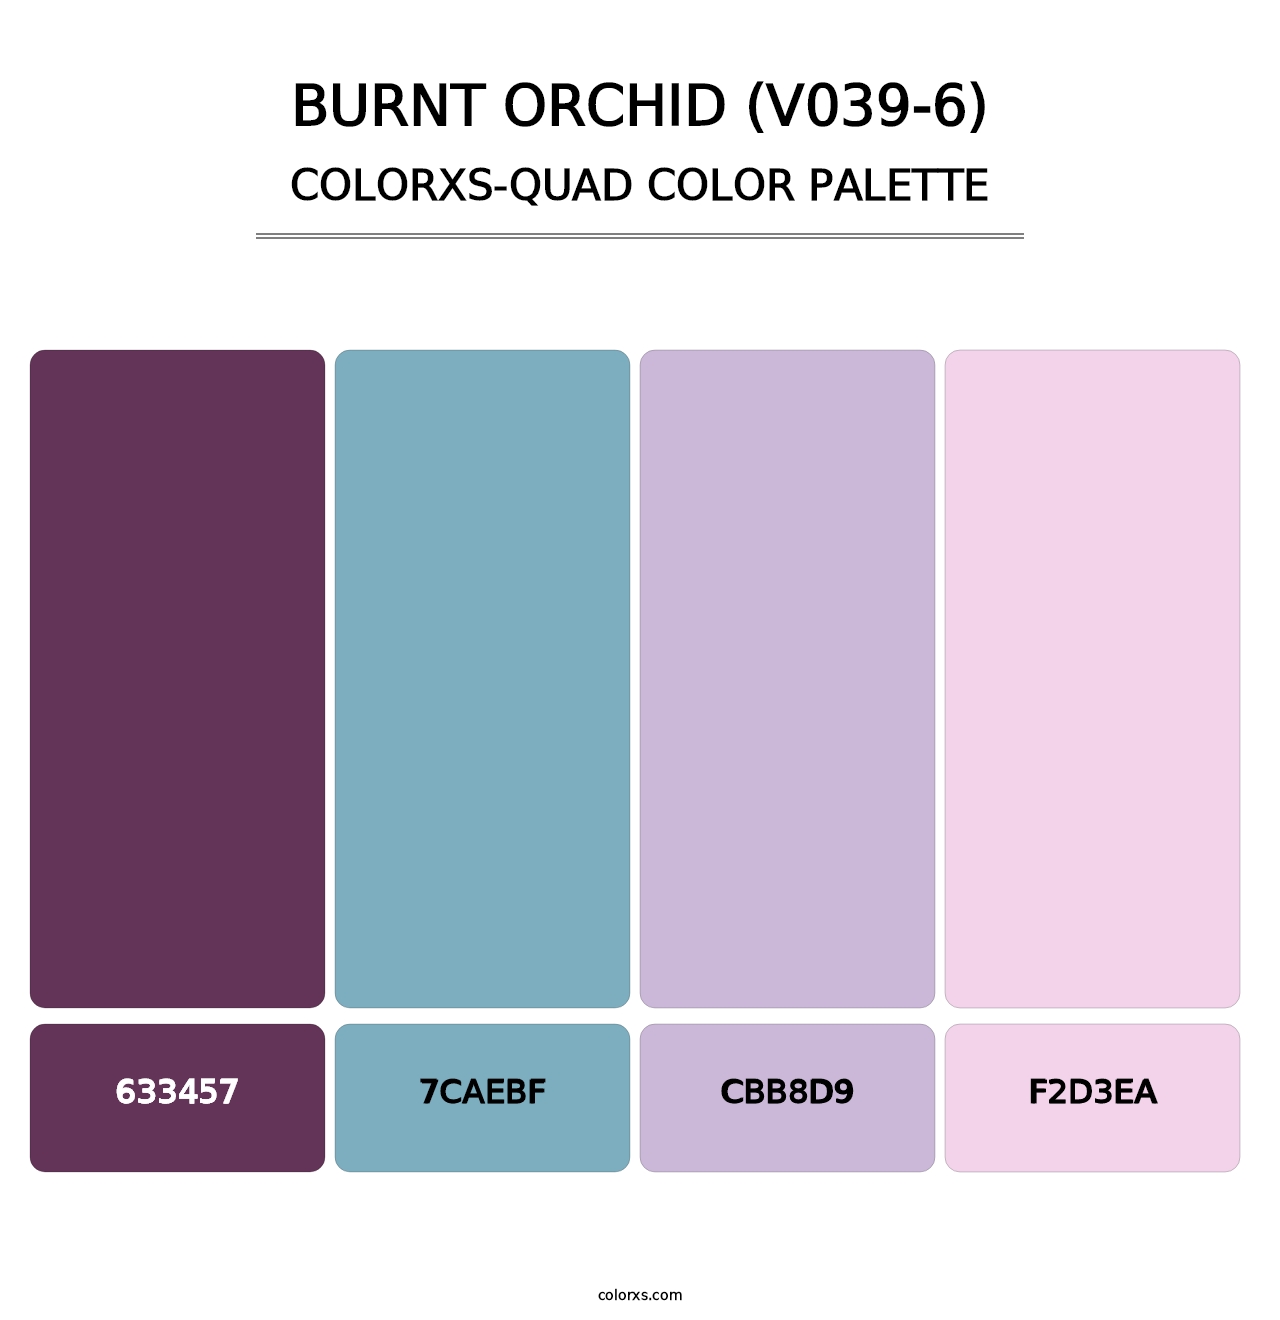 Burnt Orchid (V039-6) - Colorxs Quad Palette